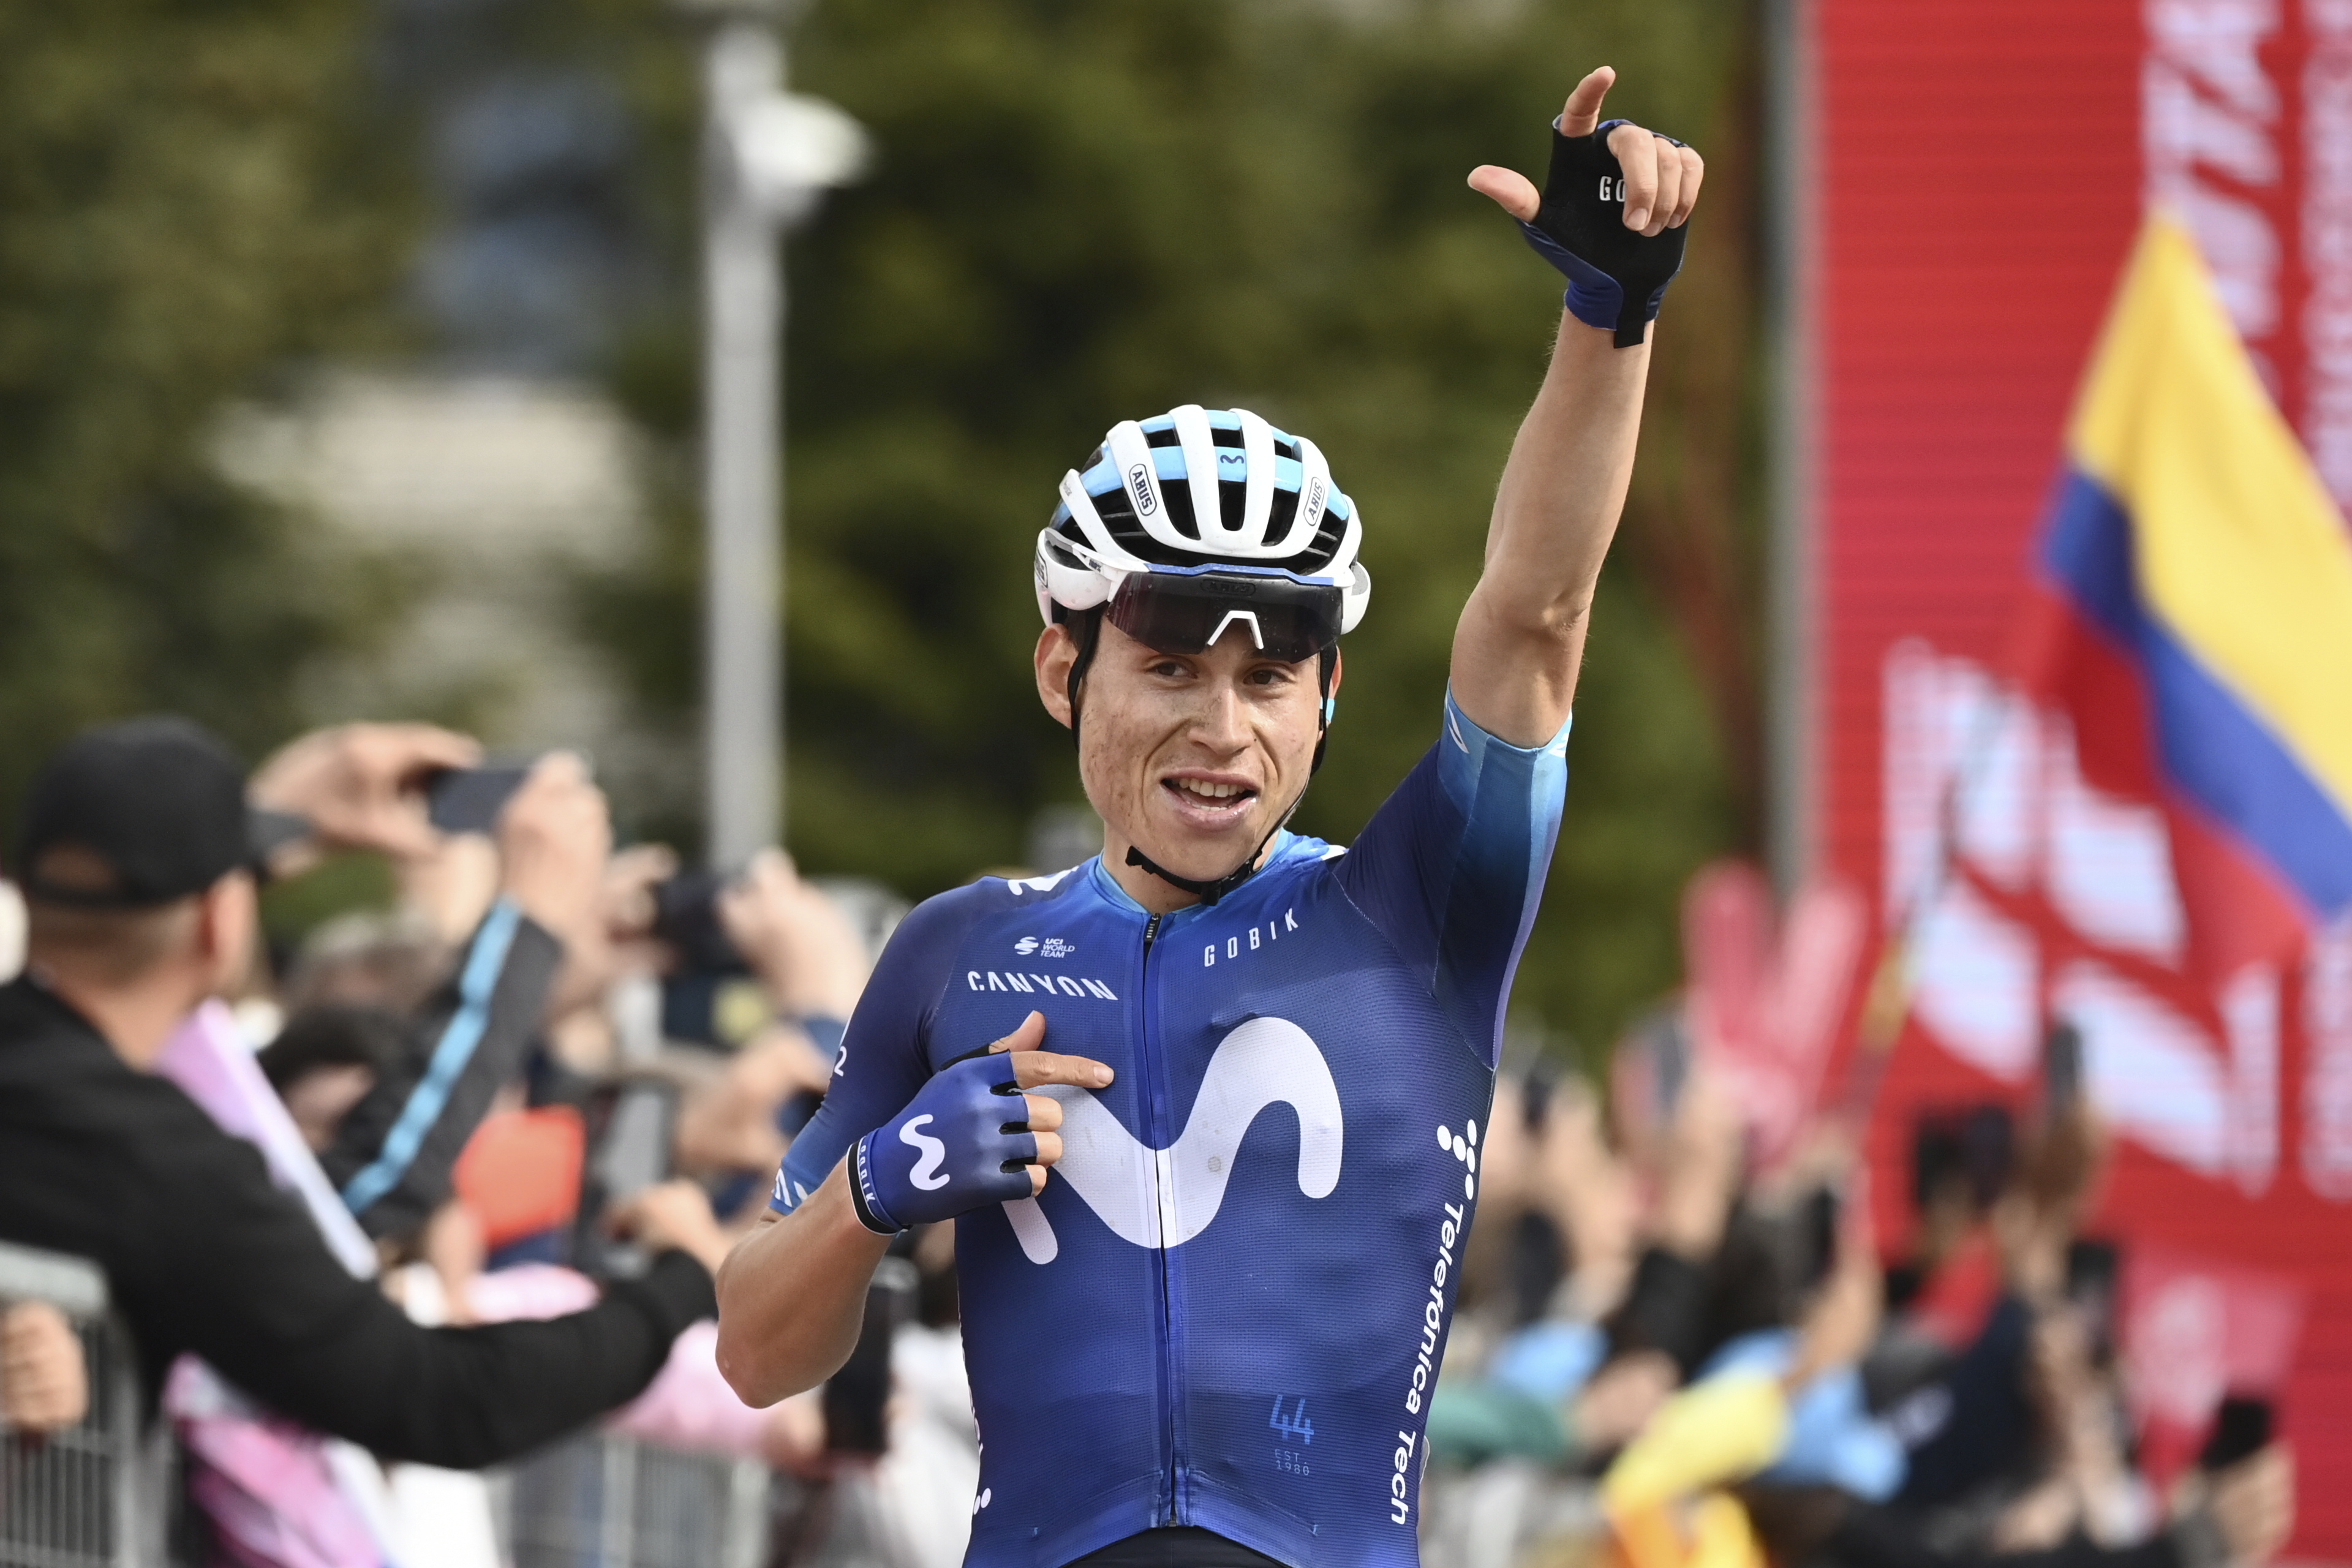 Einer Rubio escaló 90 casillas en el ranking de la UCI tras el Giro de Italia 2023: así quedaron el resto de colombianos